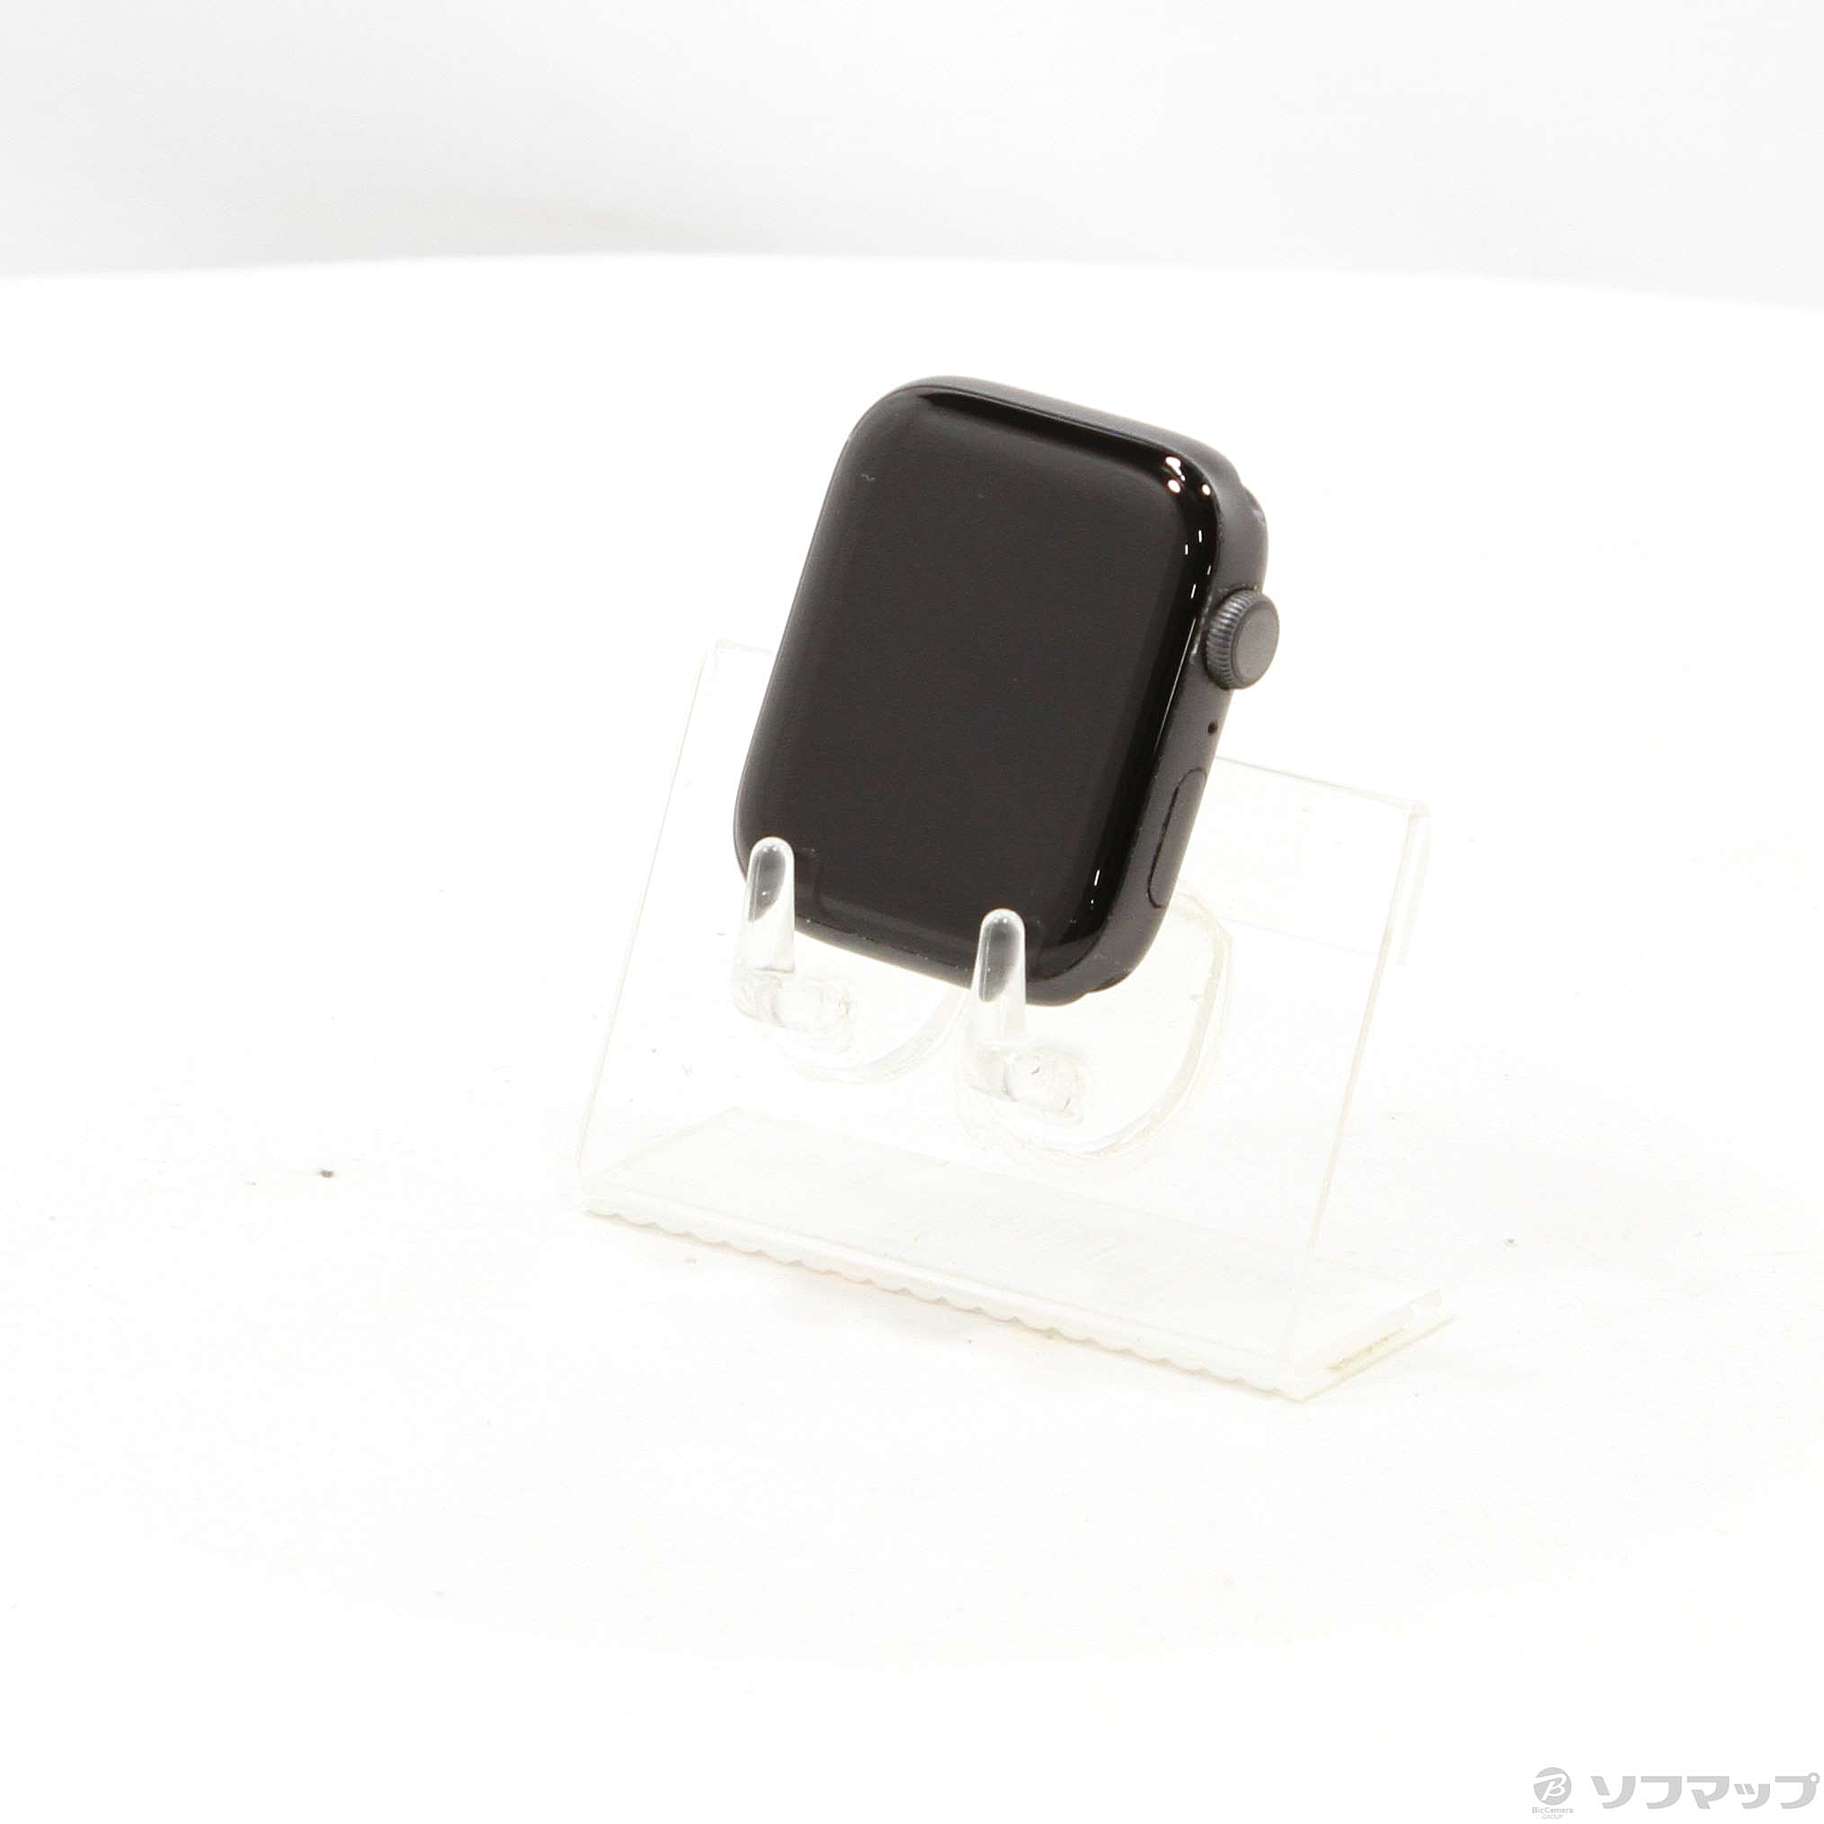 【本日価格】Apple Watch Series 5 44mm mwvf2j/a